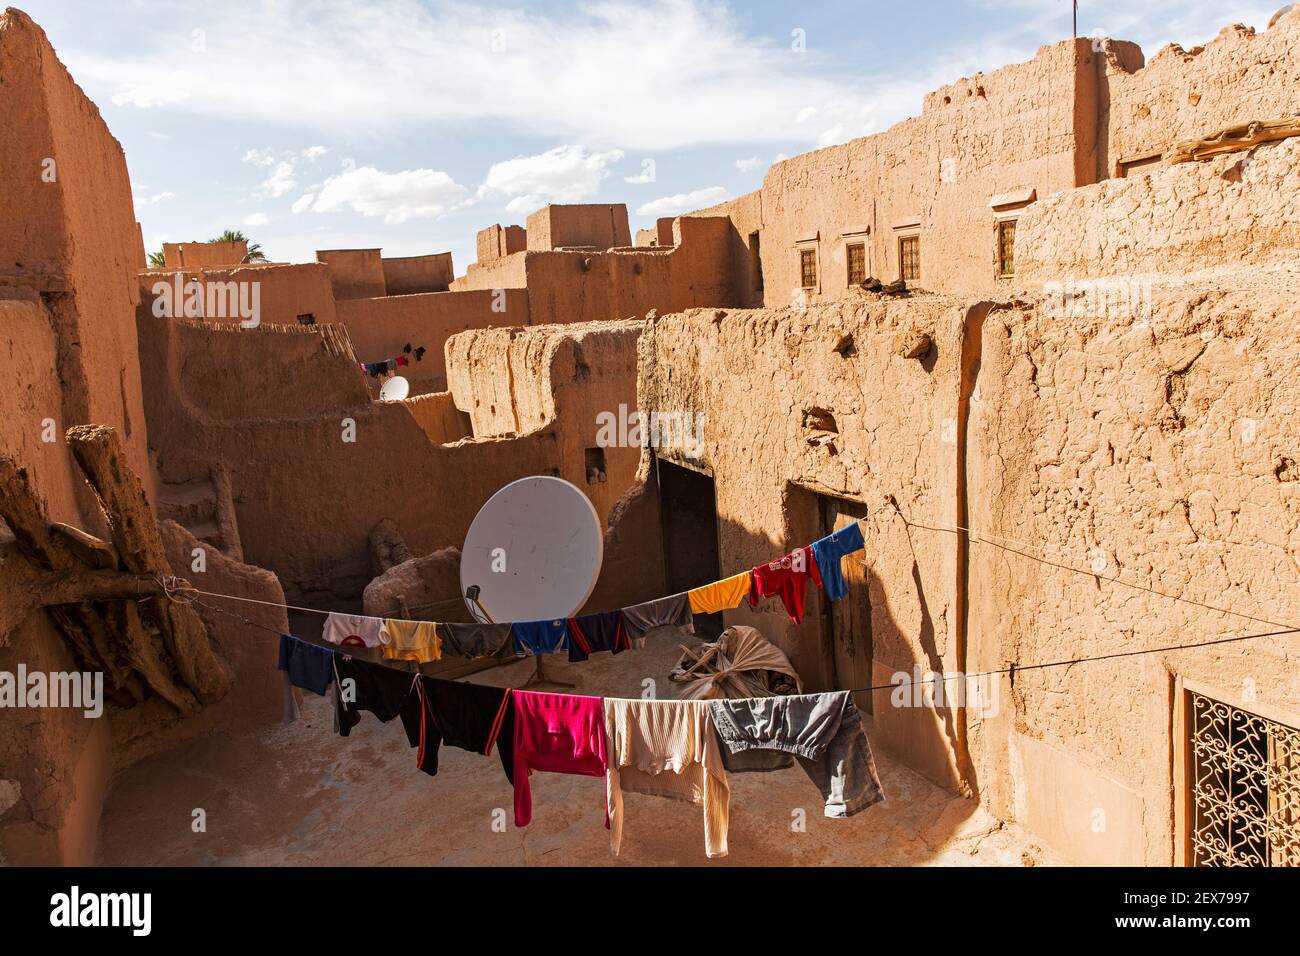 Maroc, Tinejdad, vallée de Todra, Ksar El Khorbat, est un village de murs fortifiés en terre, avec parabole satellite et buanderie suspendue Banque D'Images